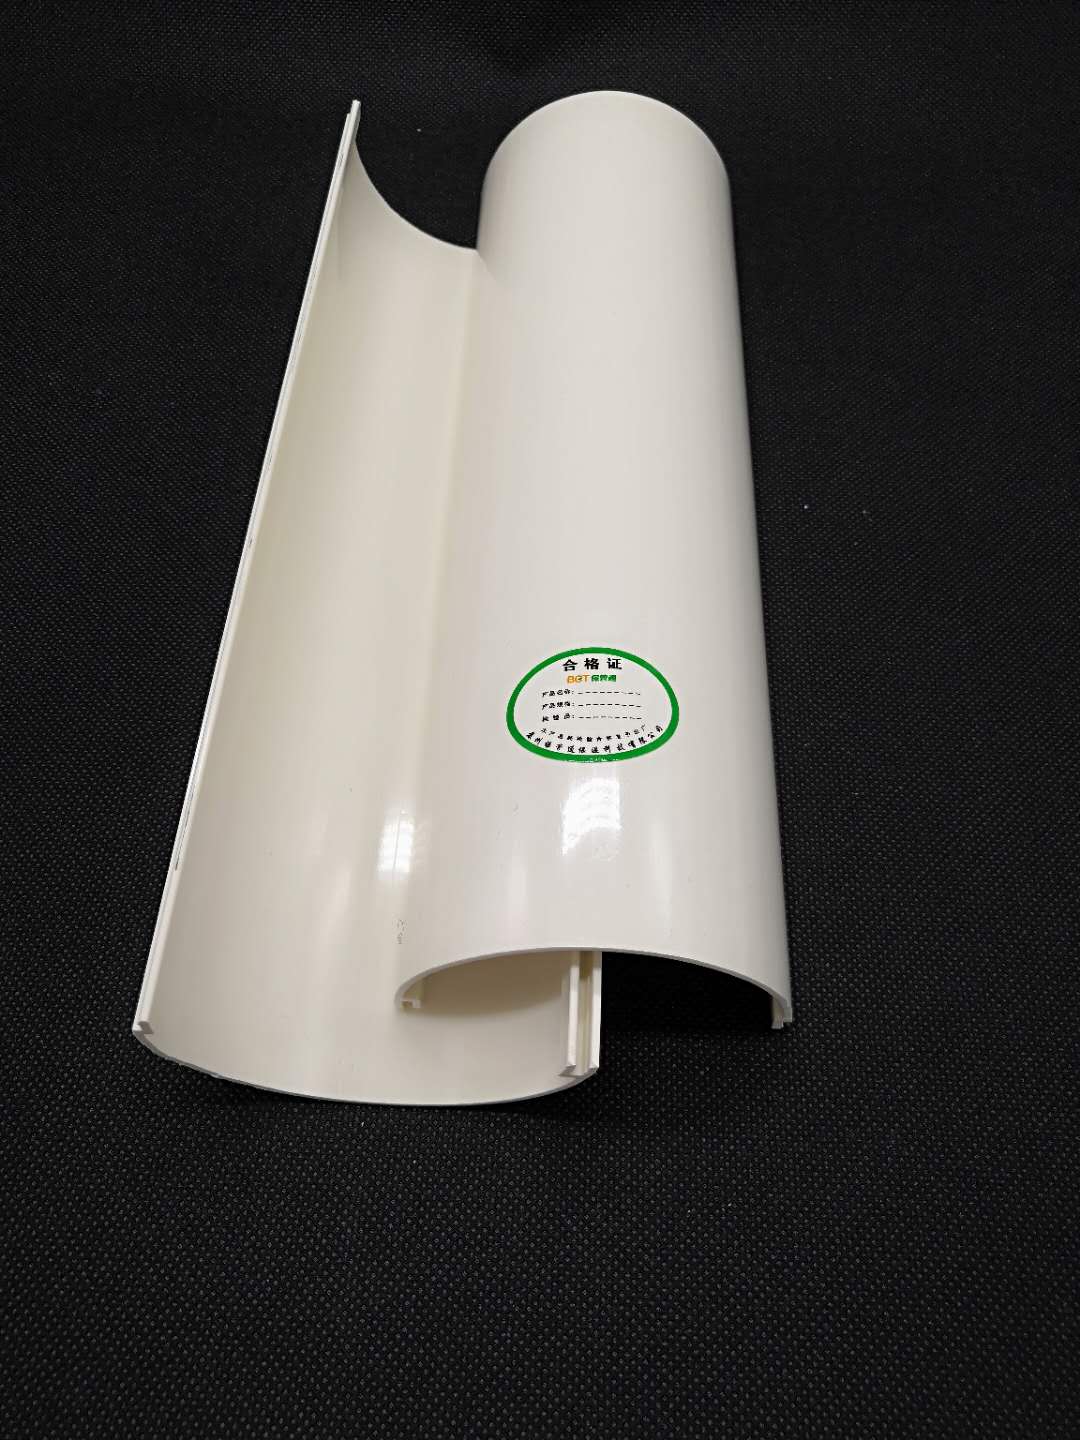 PVC超橡塑外管件